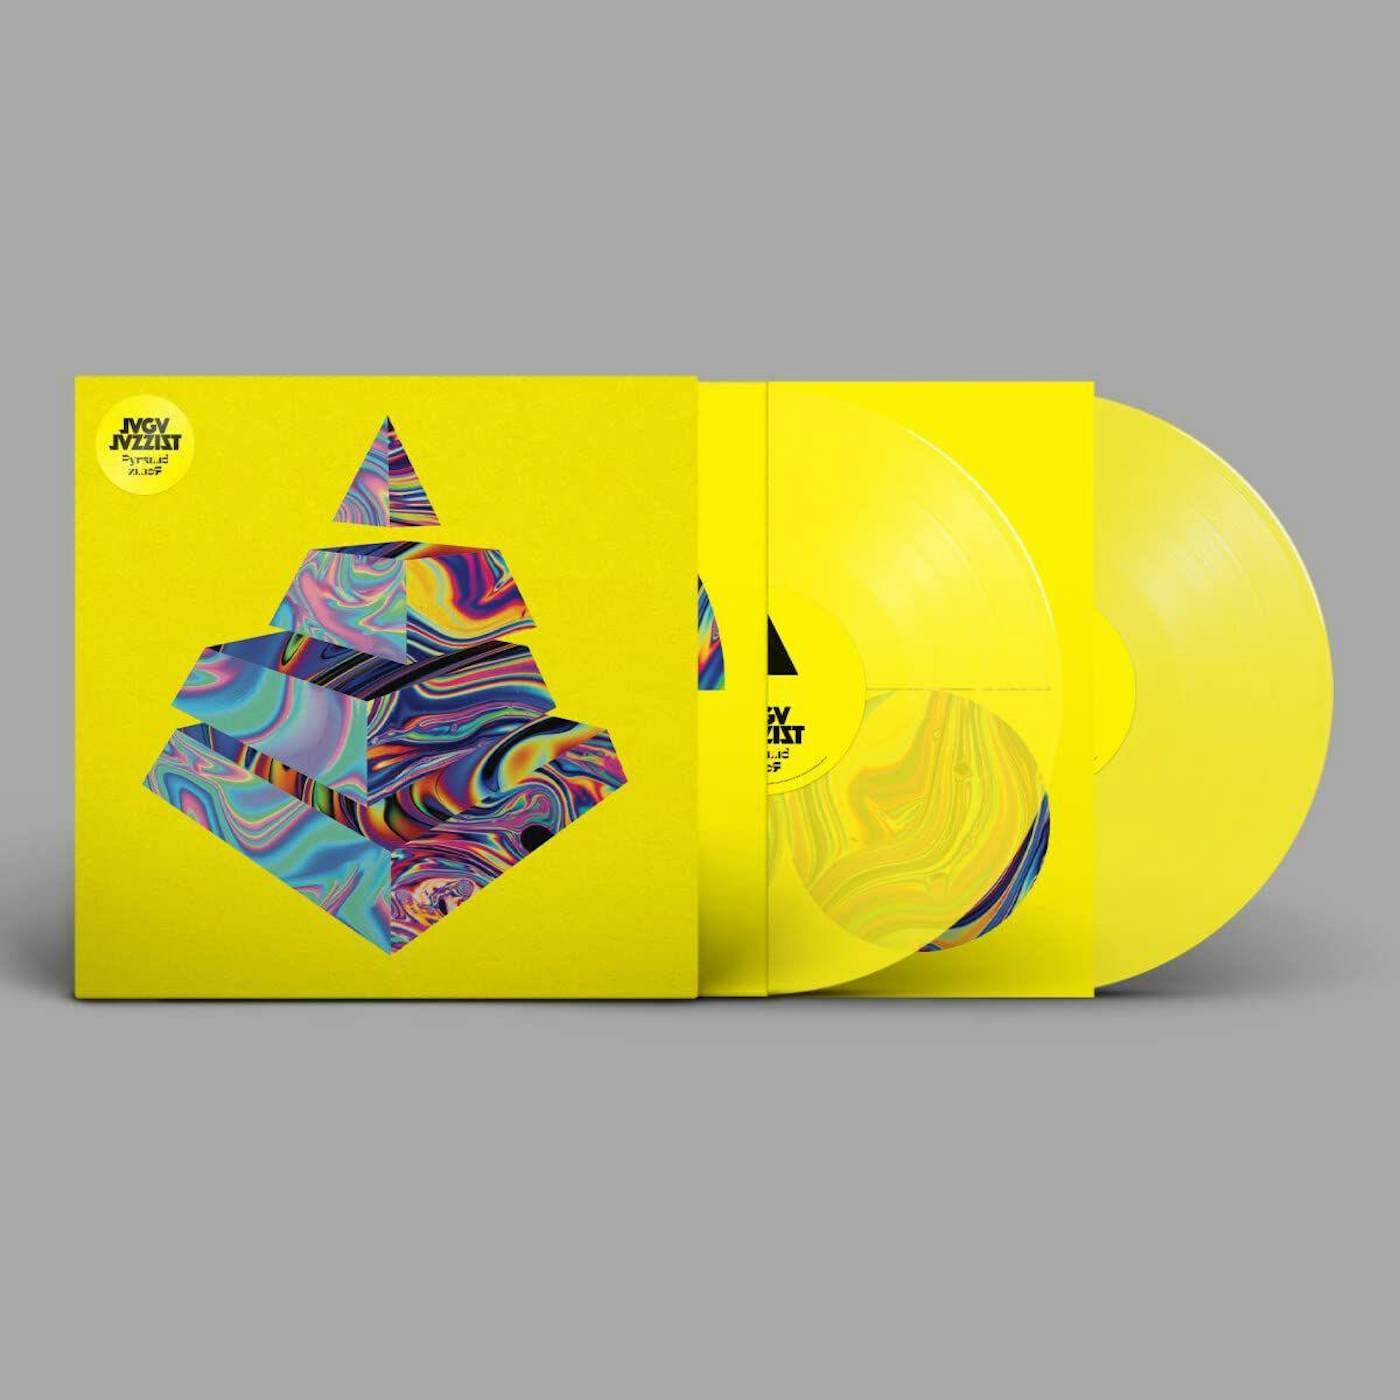 Jaga Jazzist Pyramid Remix (Yellow Vinyl) Vinyl Record